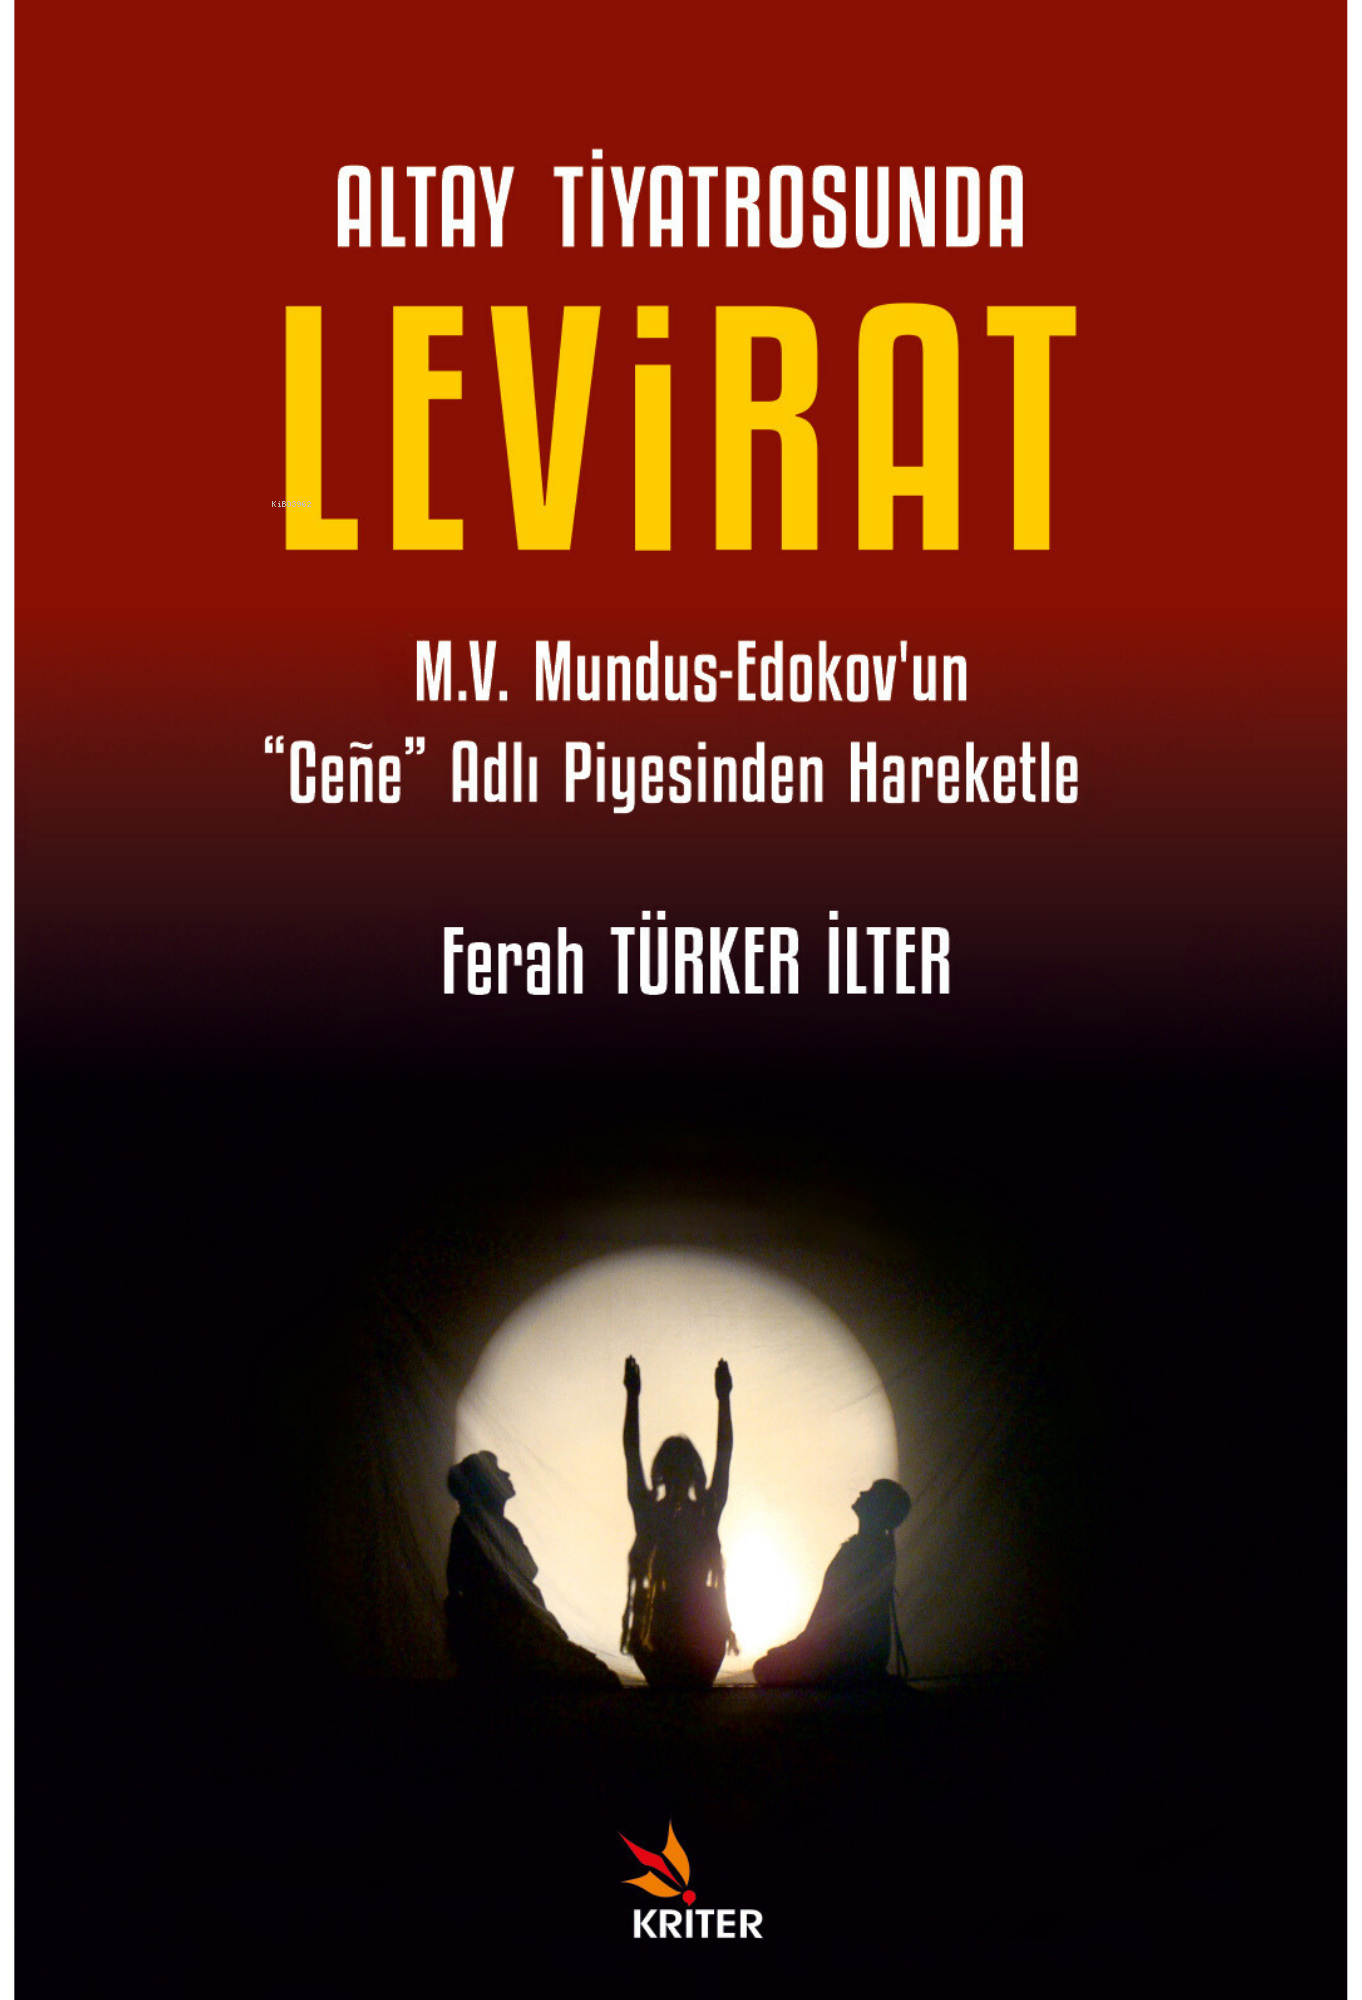 Altay Tiyatrosunda Levirat;M.V. Mundus-Edokov’un “Ceñe” Adlı Piyesinden Hareketle